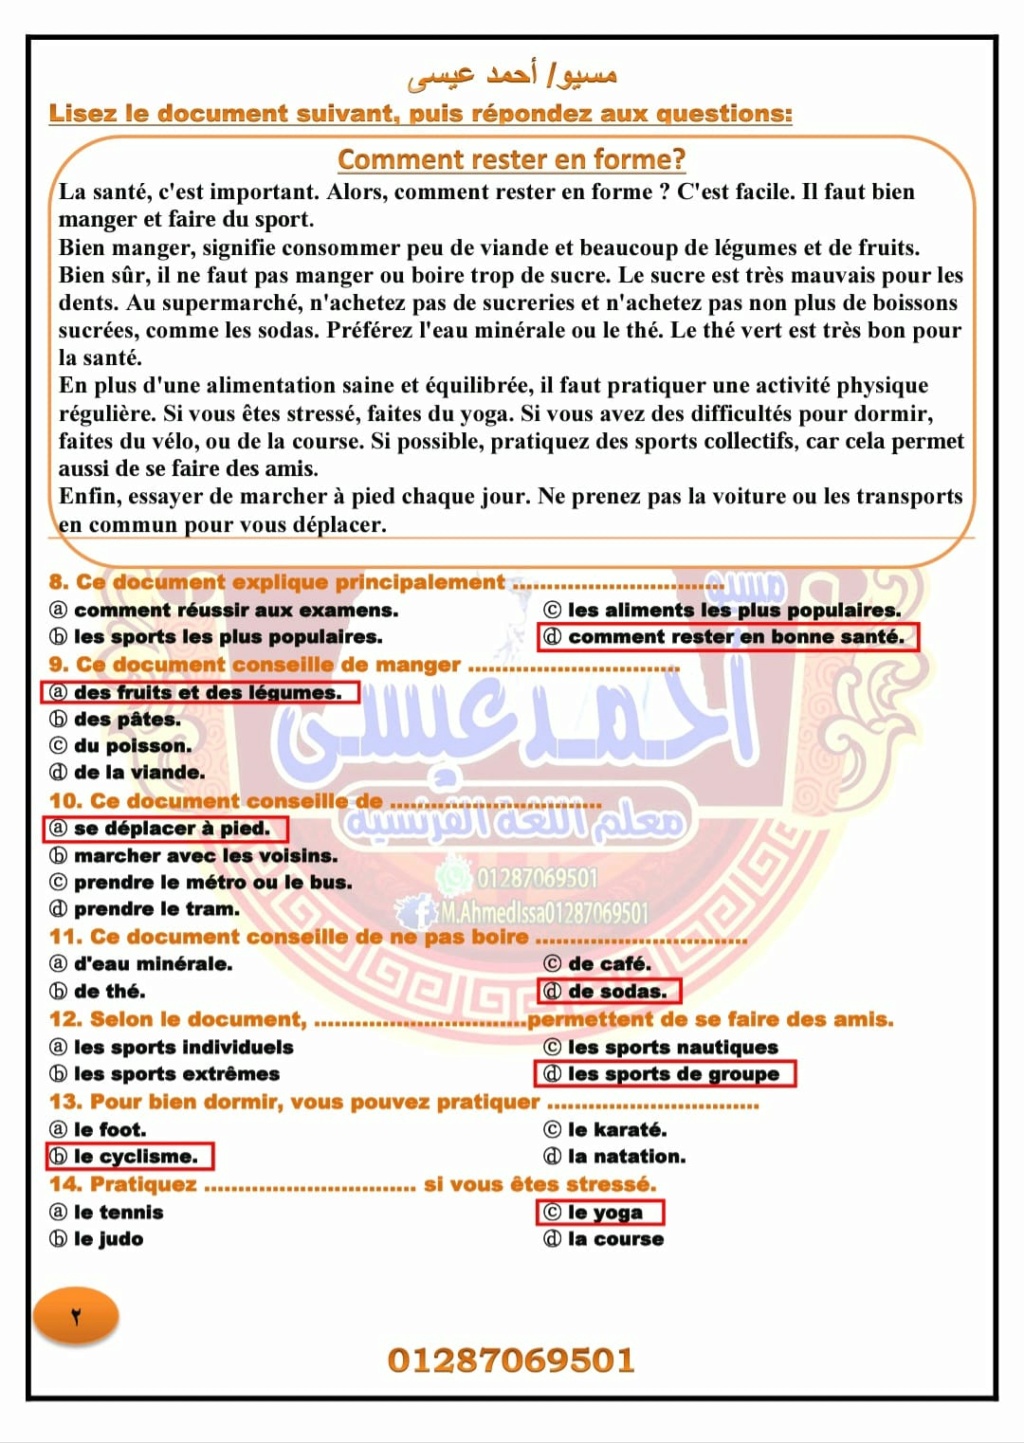  نماذج امتحان اللغة الفرنسية لتالتة ثانوى بالاجابات مسيو عمرو حجازي 2190